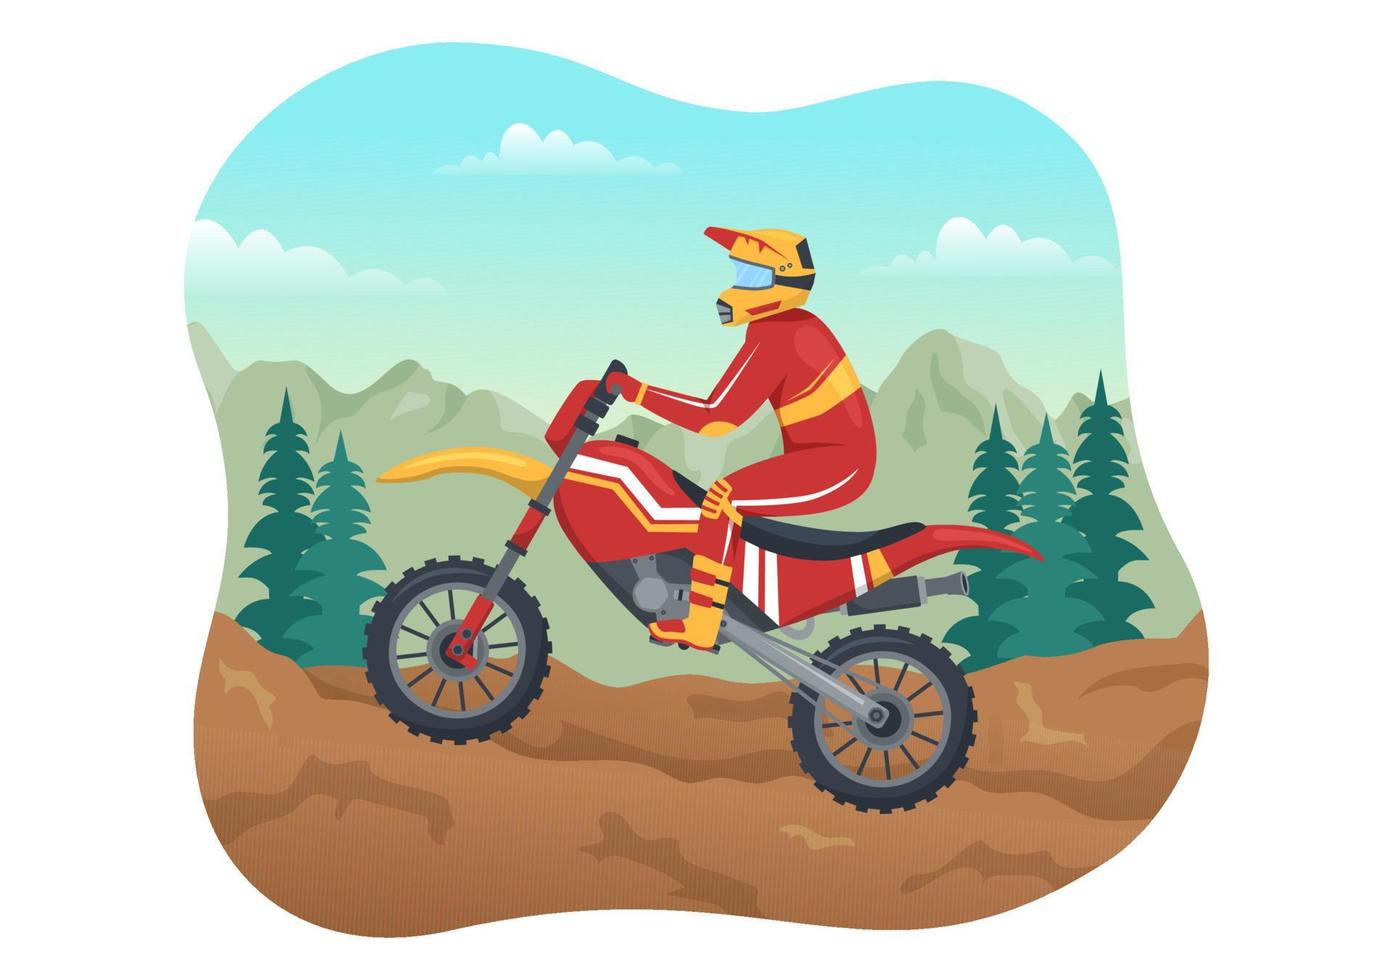 ilustración de motocross con un ciclista montando una bicicleta a través de barro, caminos rocosos y aventura en una plantilla dibujada a mano de dibujos animados planos de deportes extremos vector